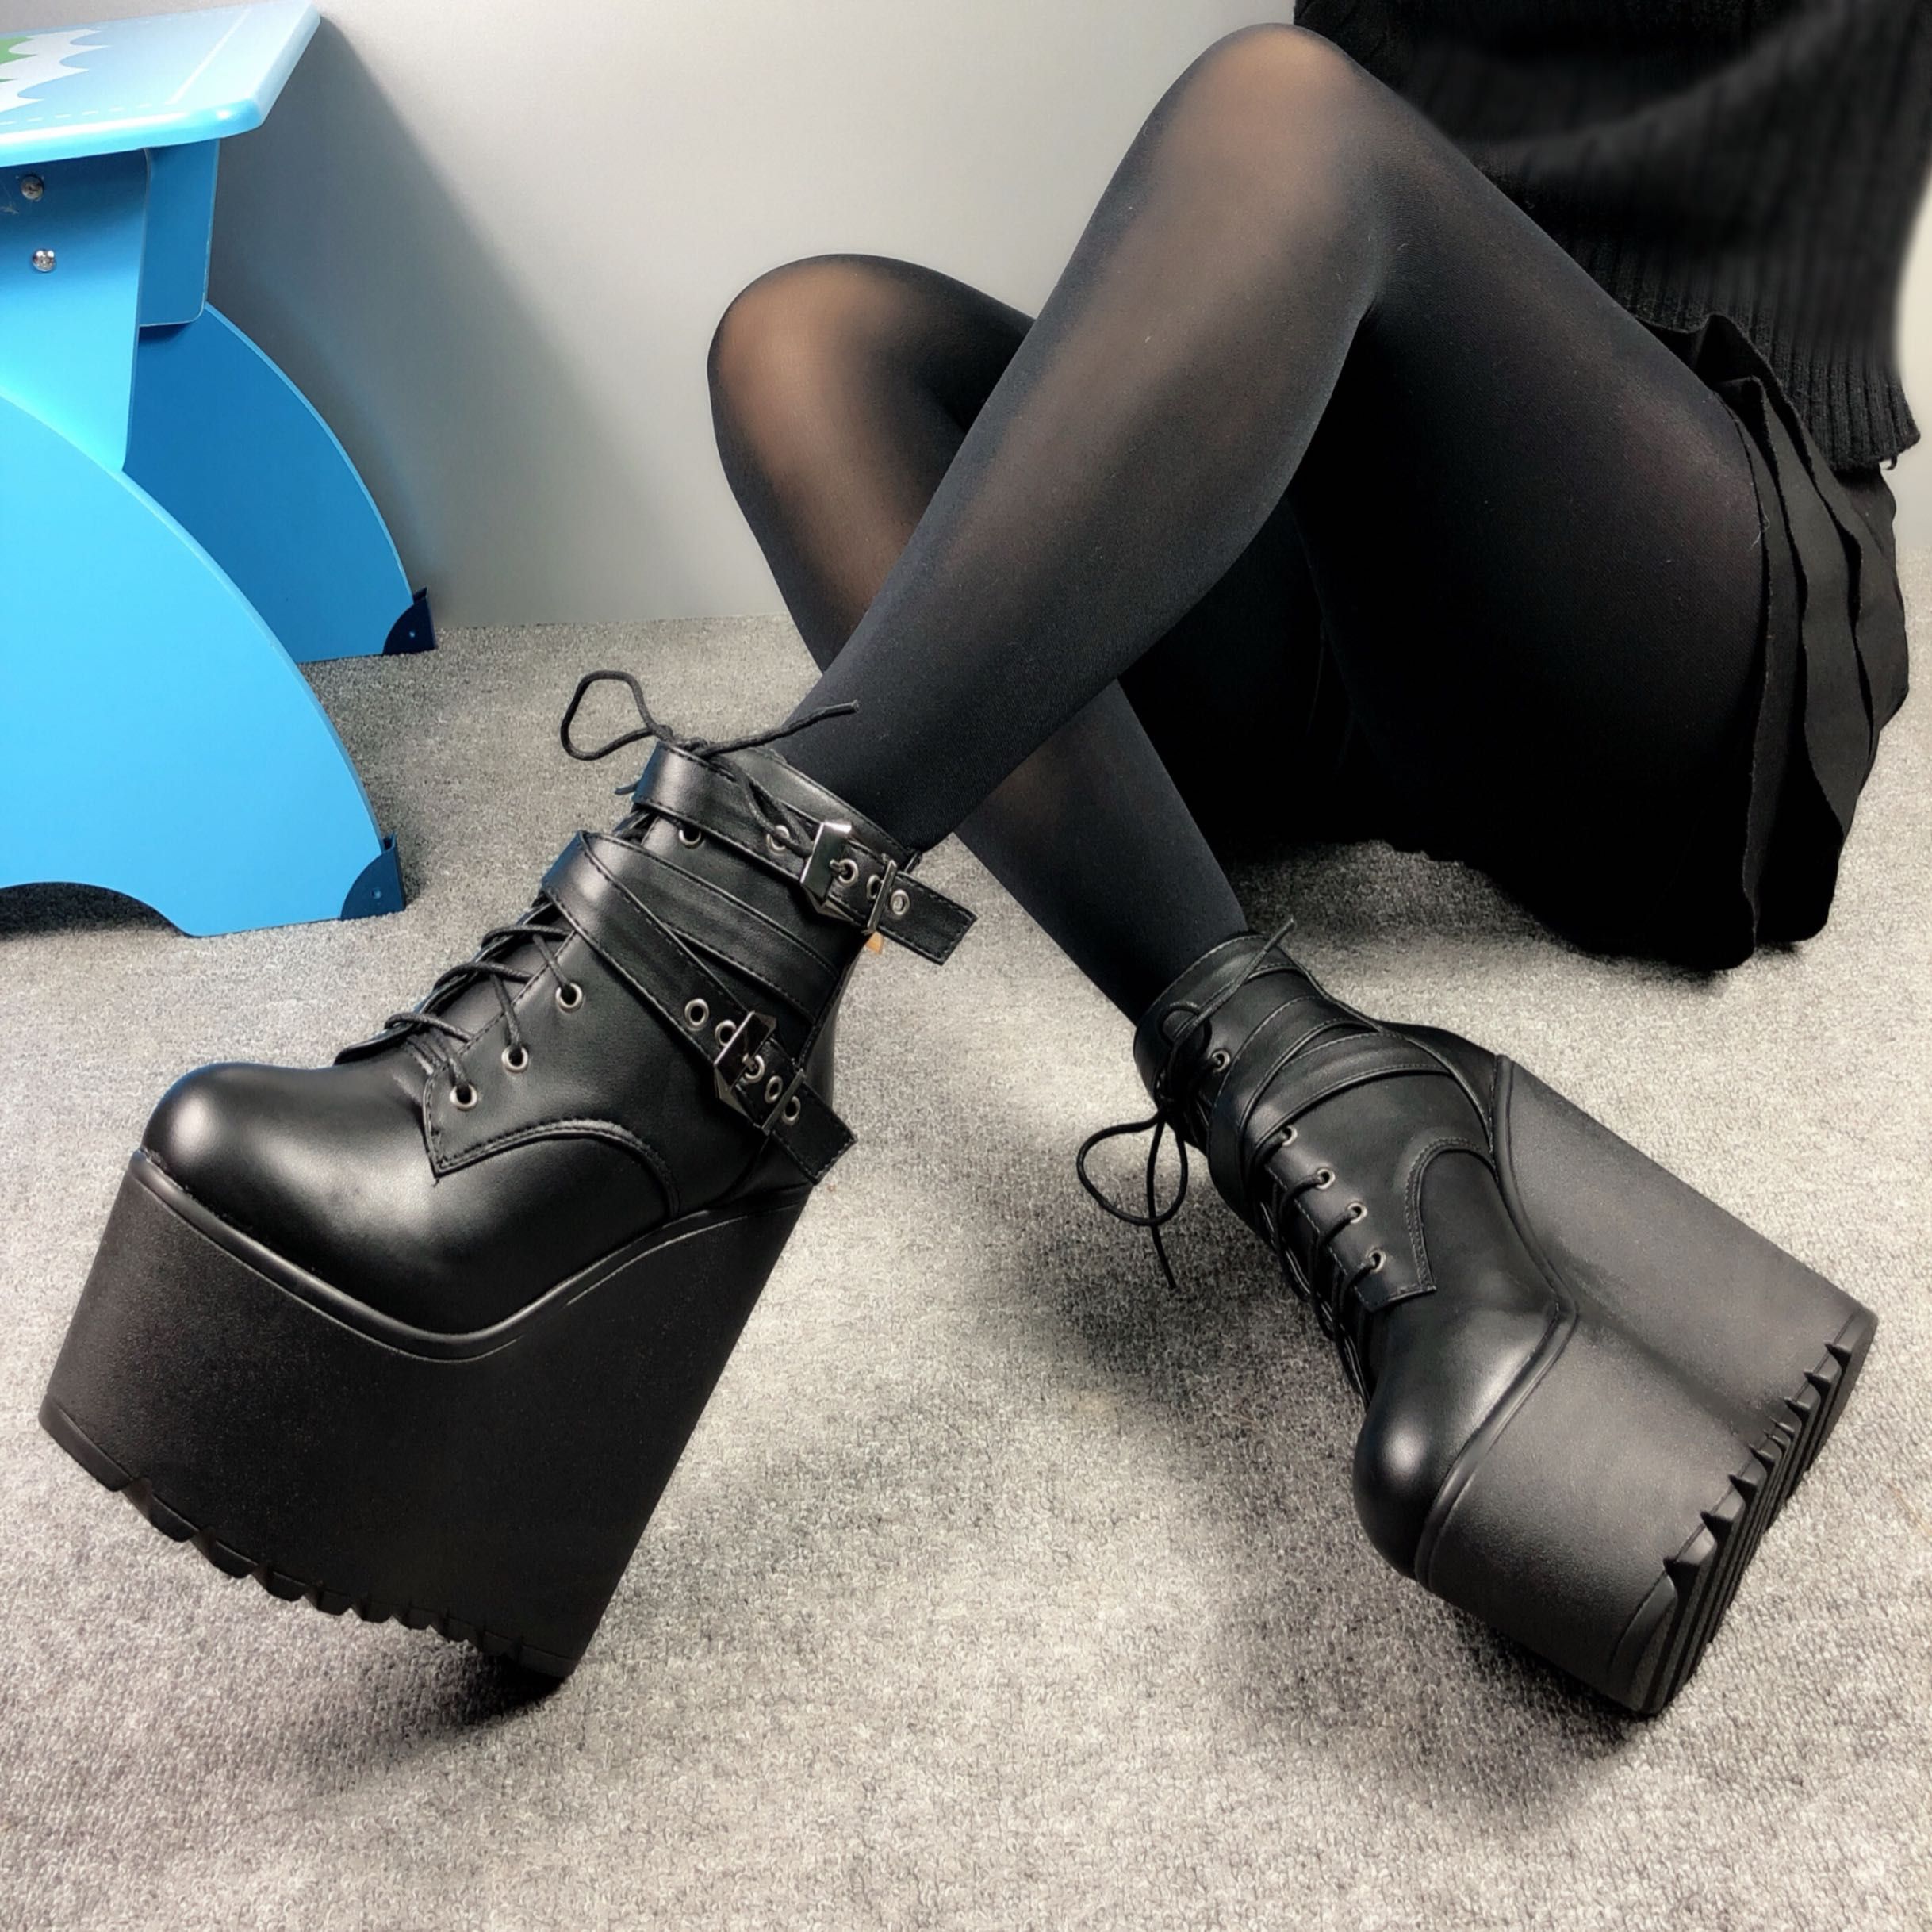 rubber sole platform boots